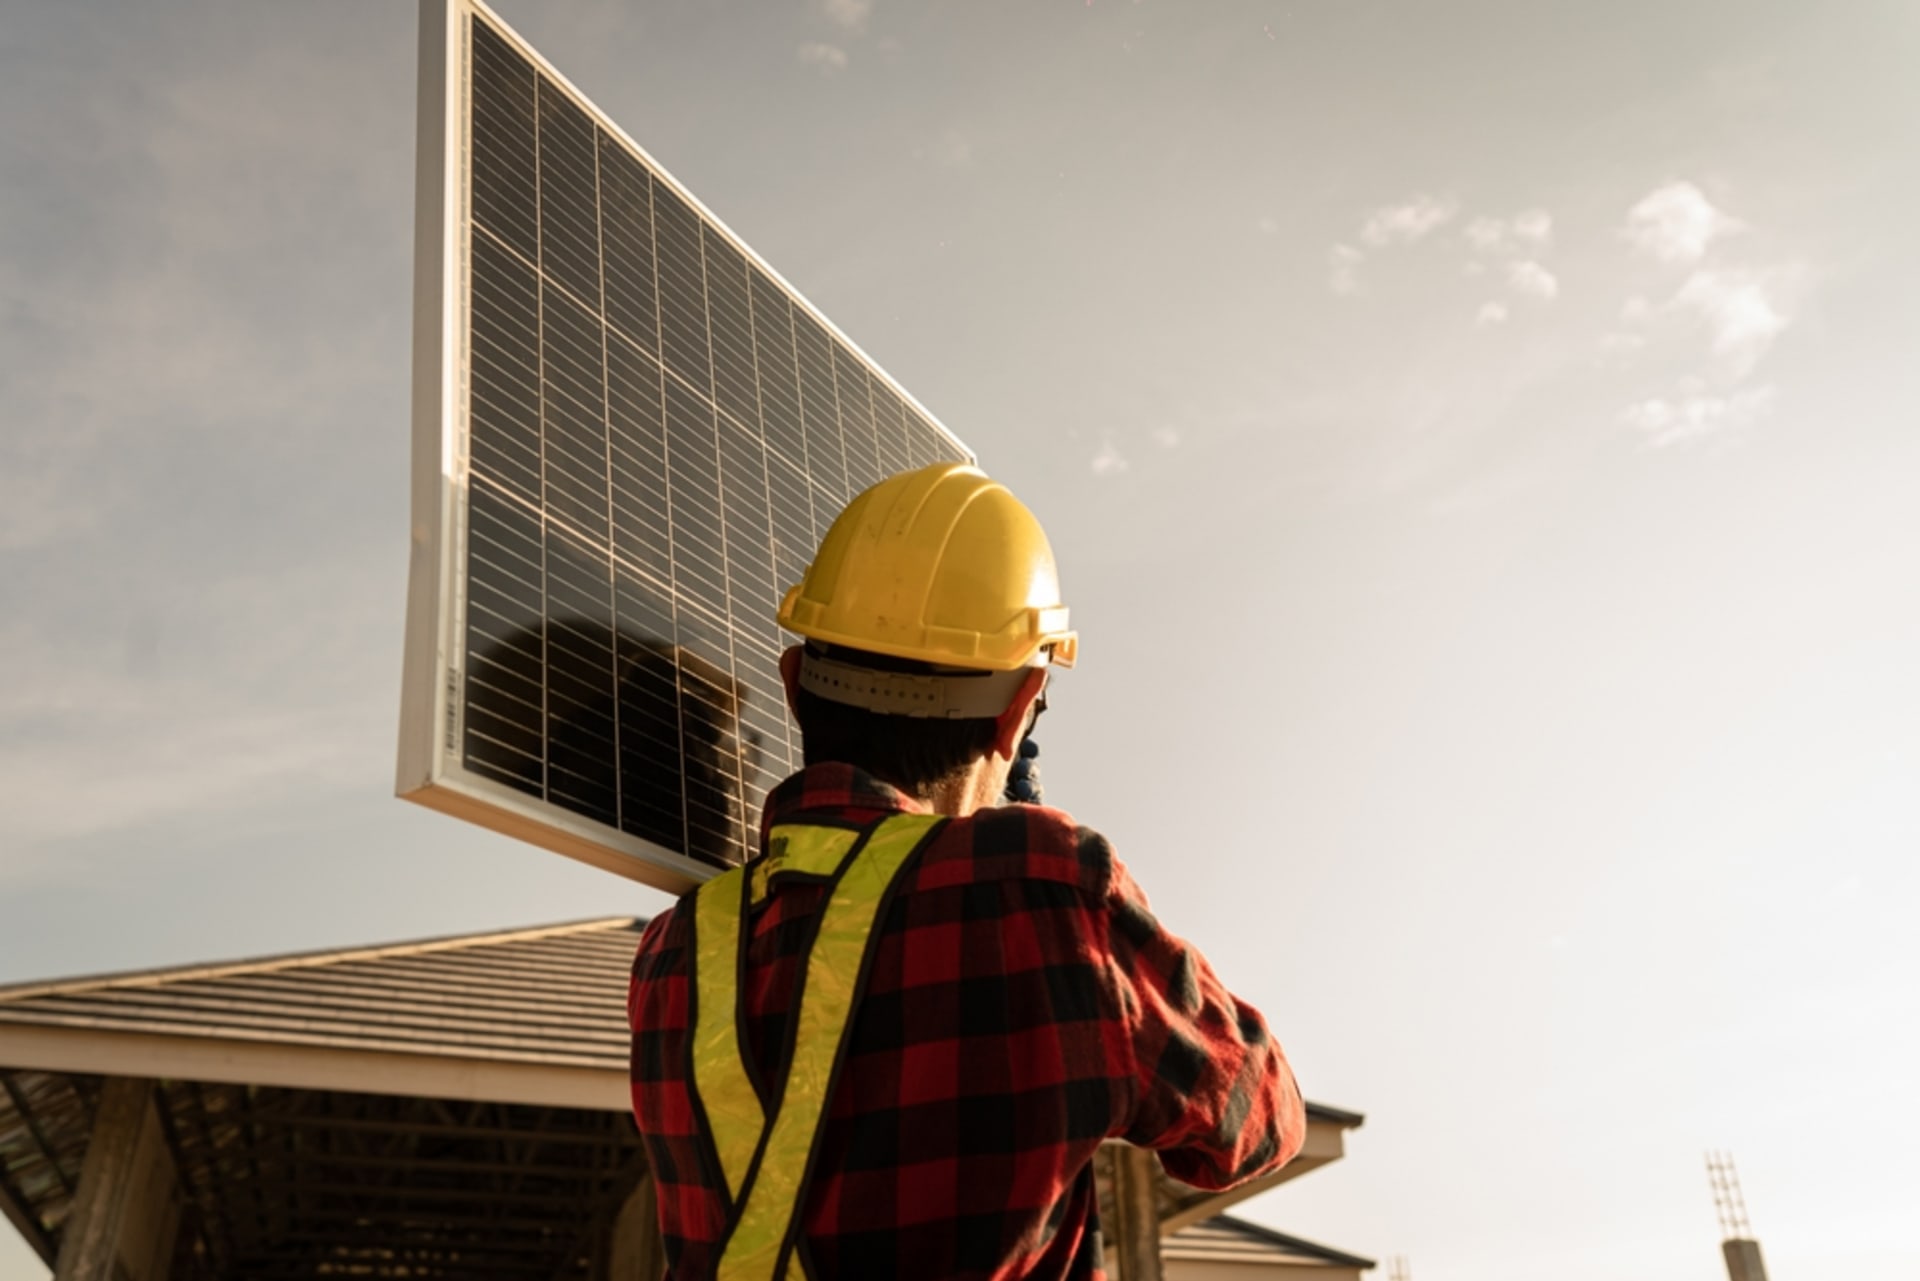 Už v roce 2029 by mohla být fotovoltaika ze zákona povinná pro všechny nové stavby.